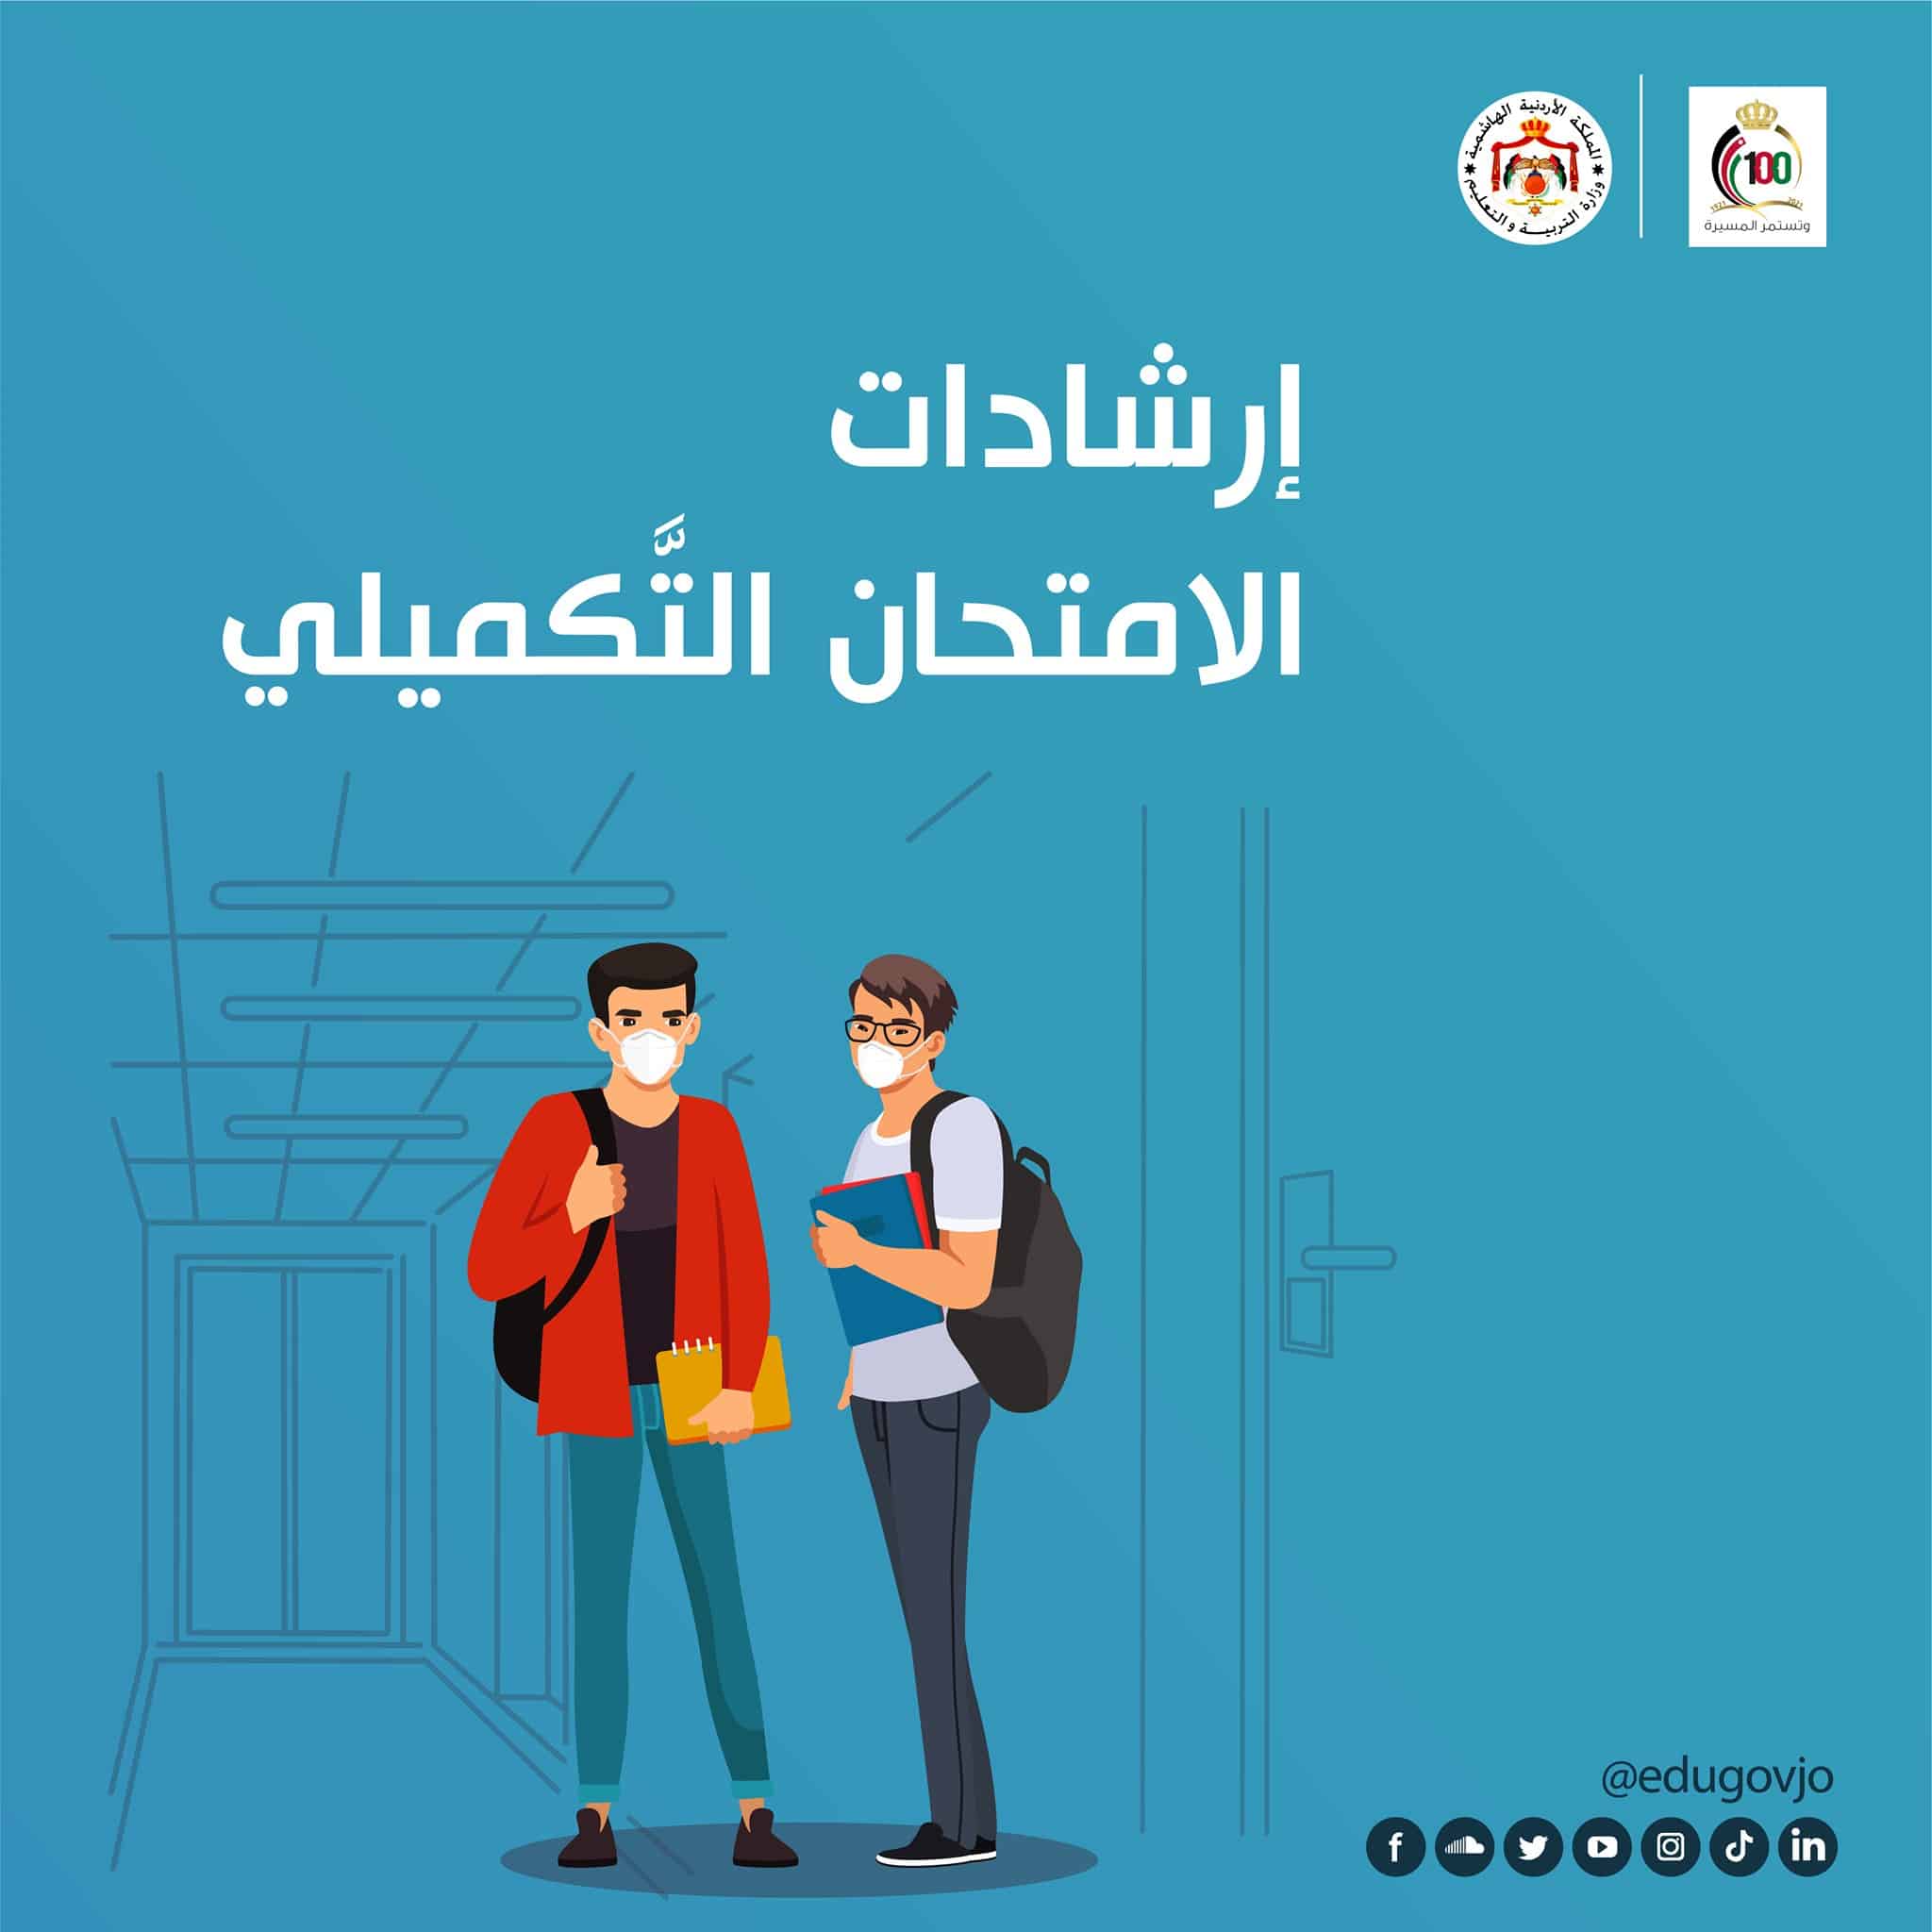 امتحانات توجيهي الأردن التكميلي 2021 للمدارس النظامية والخاصة وتعليمات الدخول وشروط السلامة